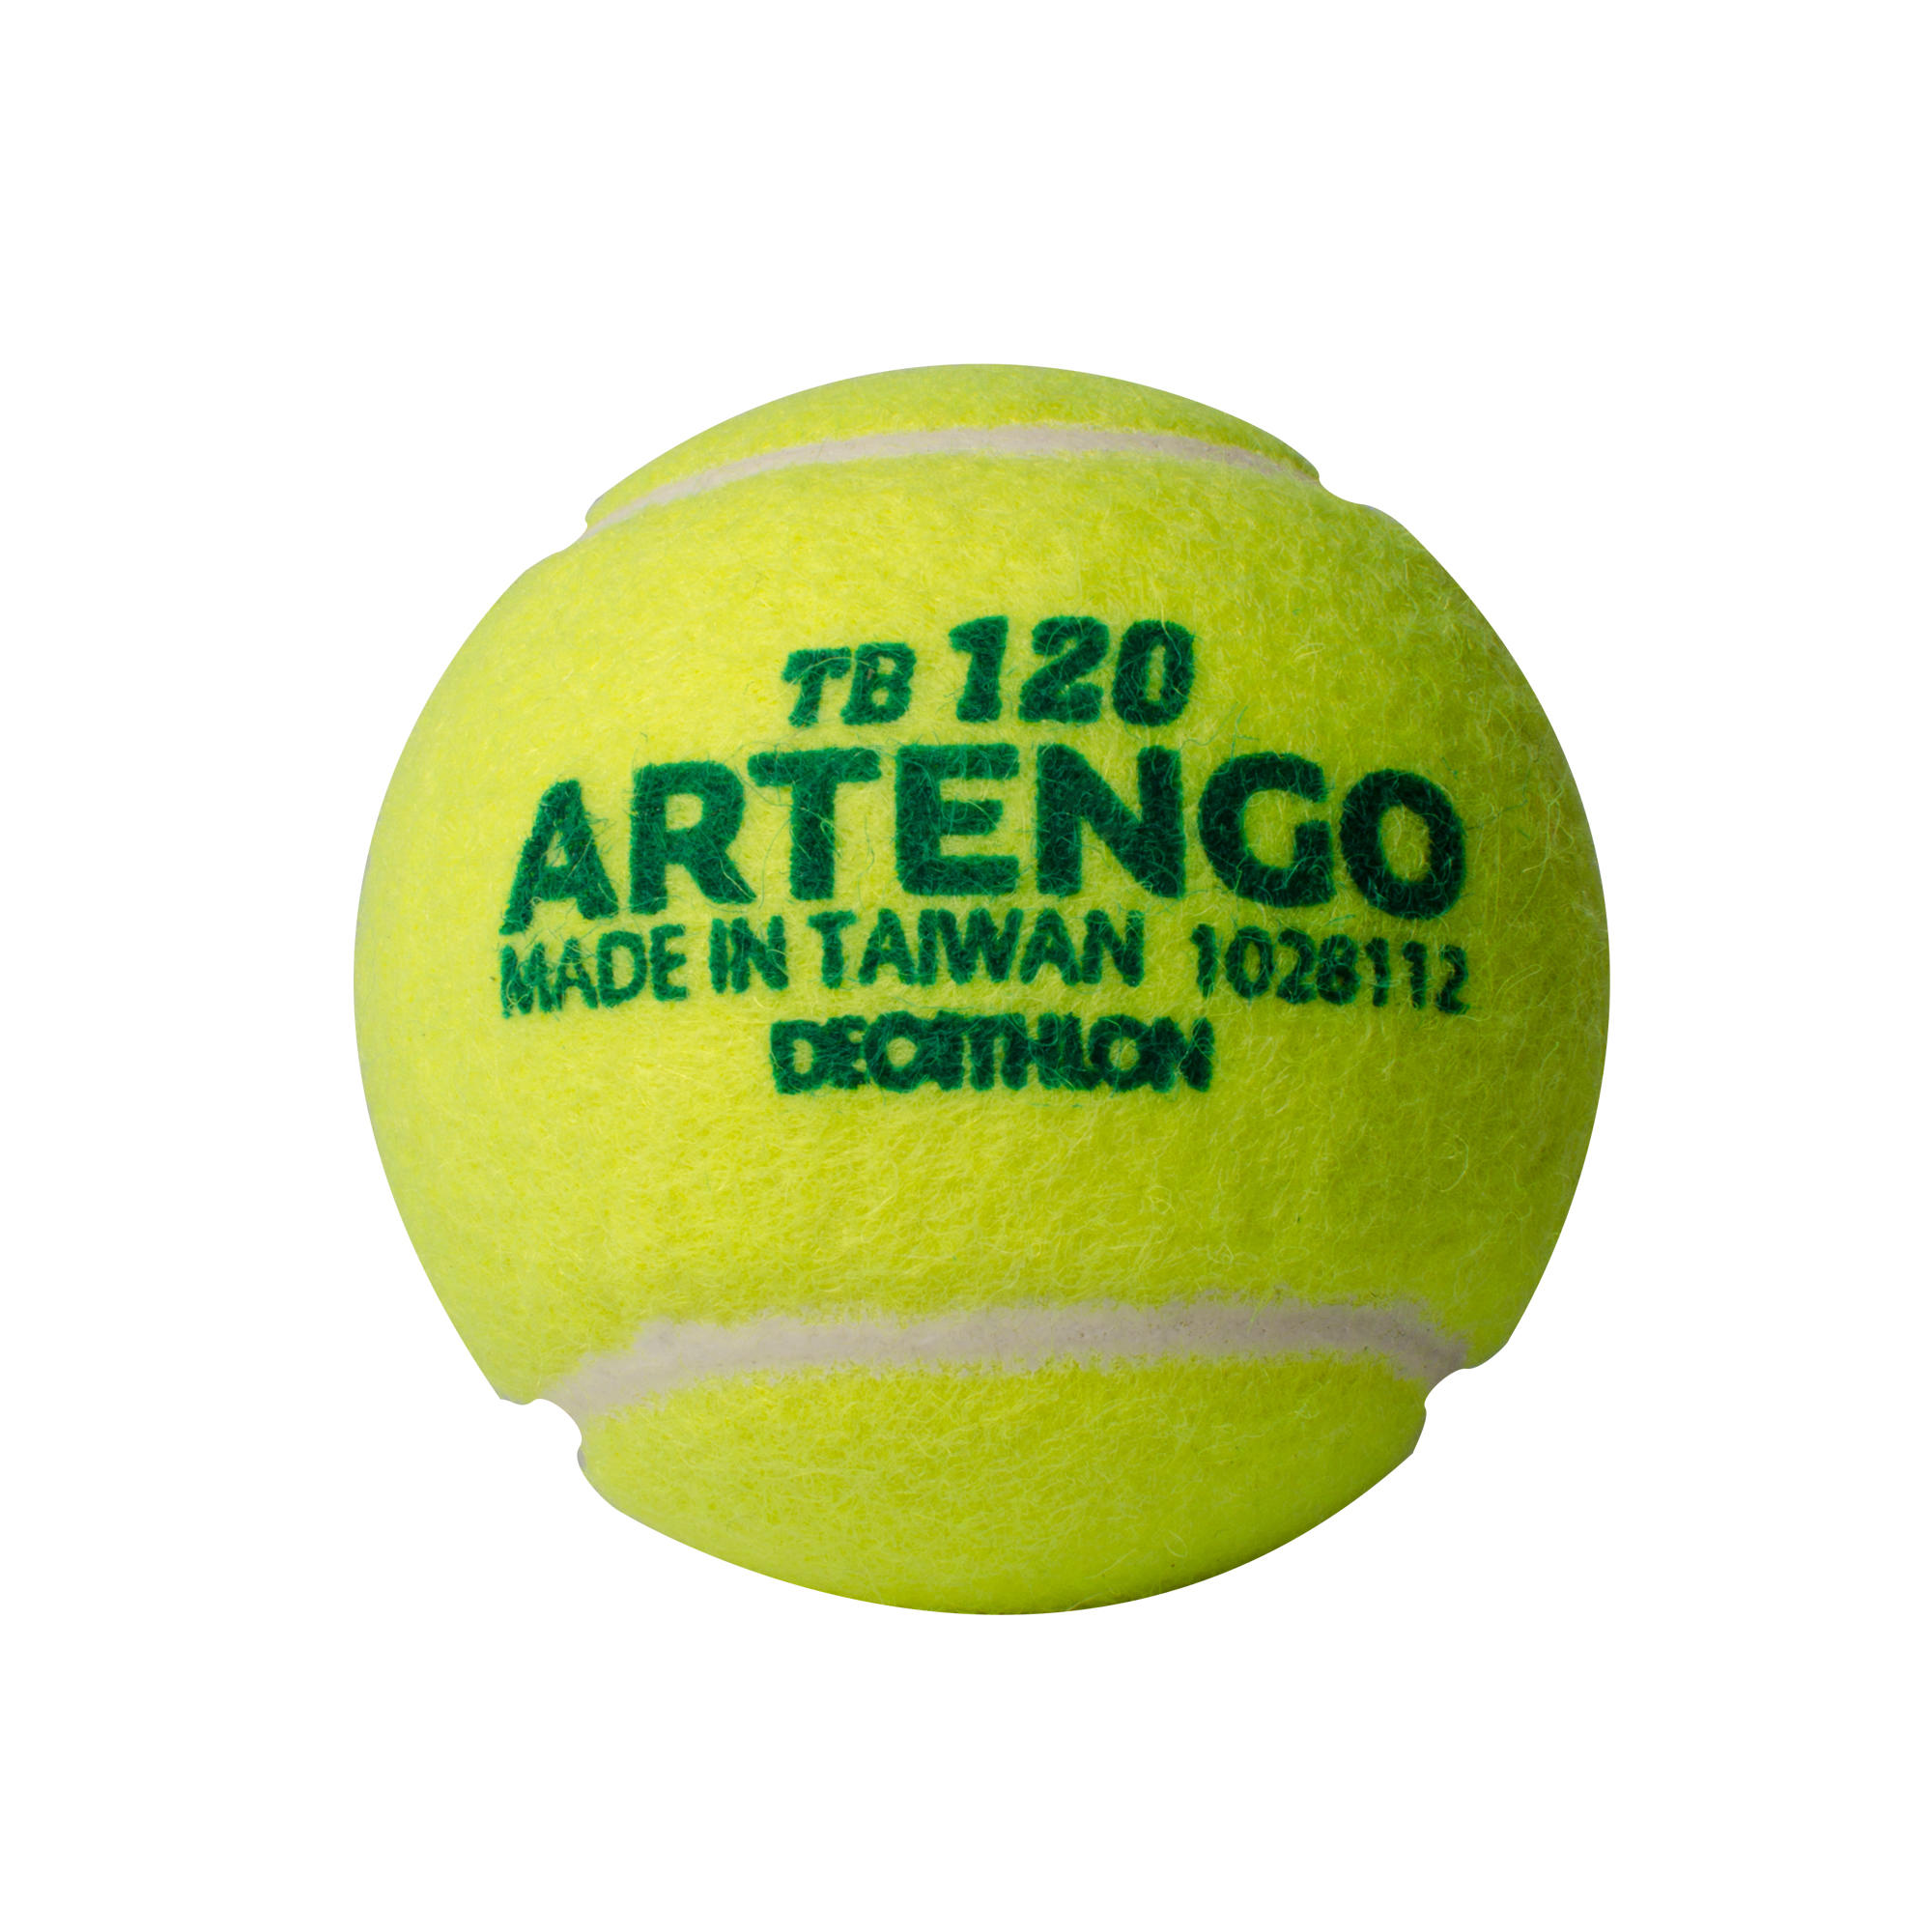 [ส่งฟรี ] ลูกเทนนิสรุ่น TB120 (แพ็ค 4 ลูก) (สีเหลือง) Tennis Ball TB120 4-Pack- Yellow Sport tennis Tennis Ball  อุปกรณ์เทนนิสแท้ คุณภาพสูง โปรโมชั่นสุดคุ้ม